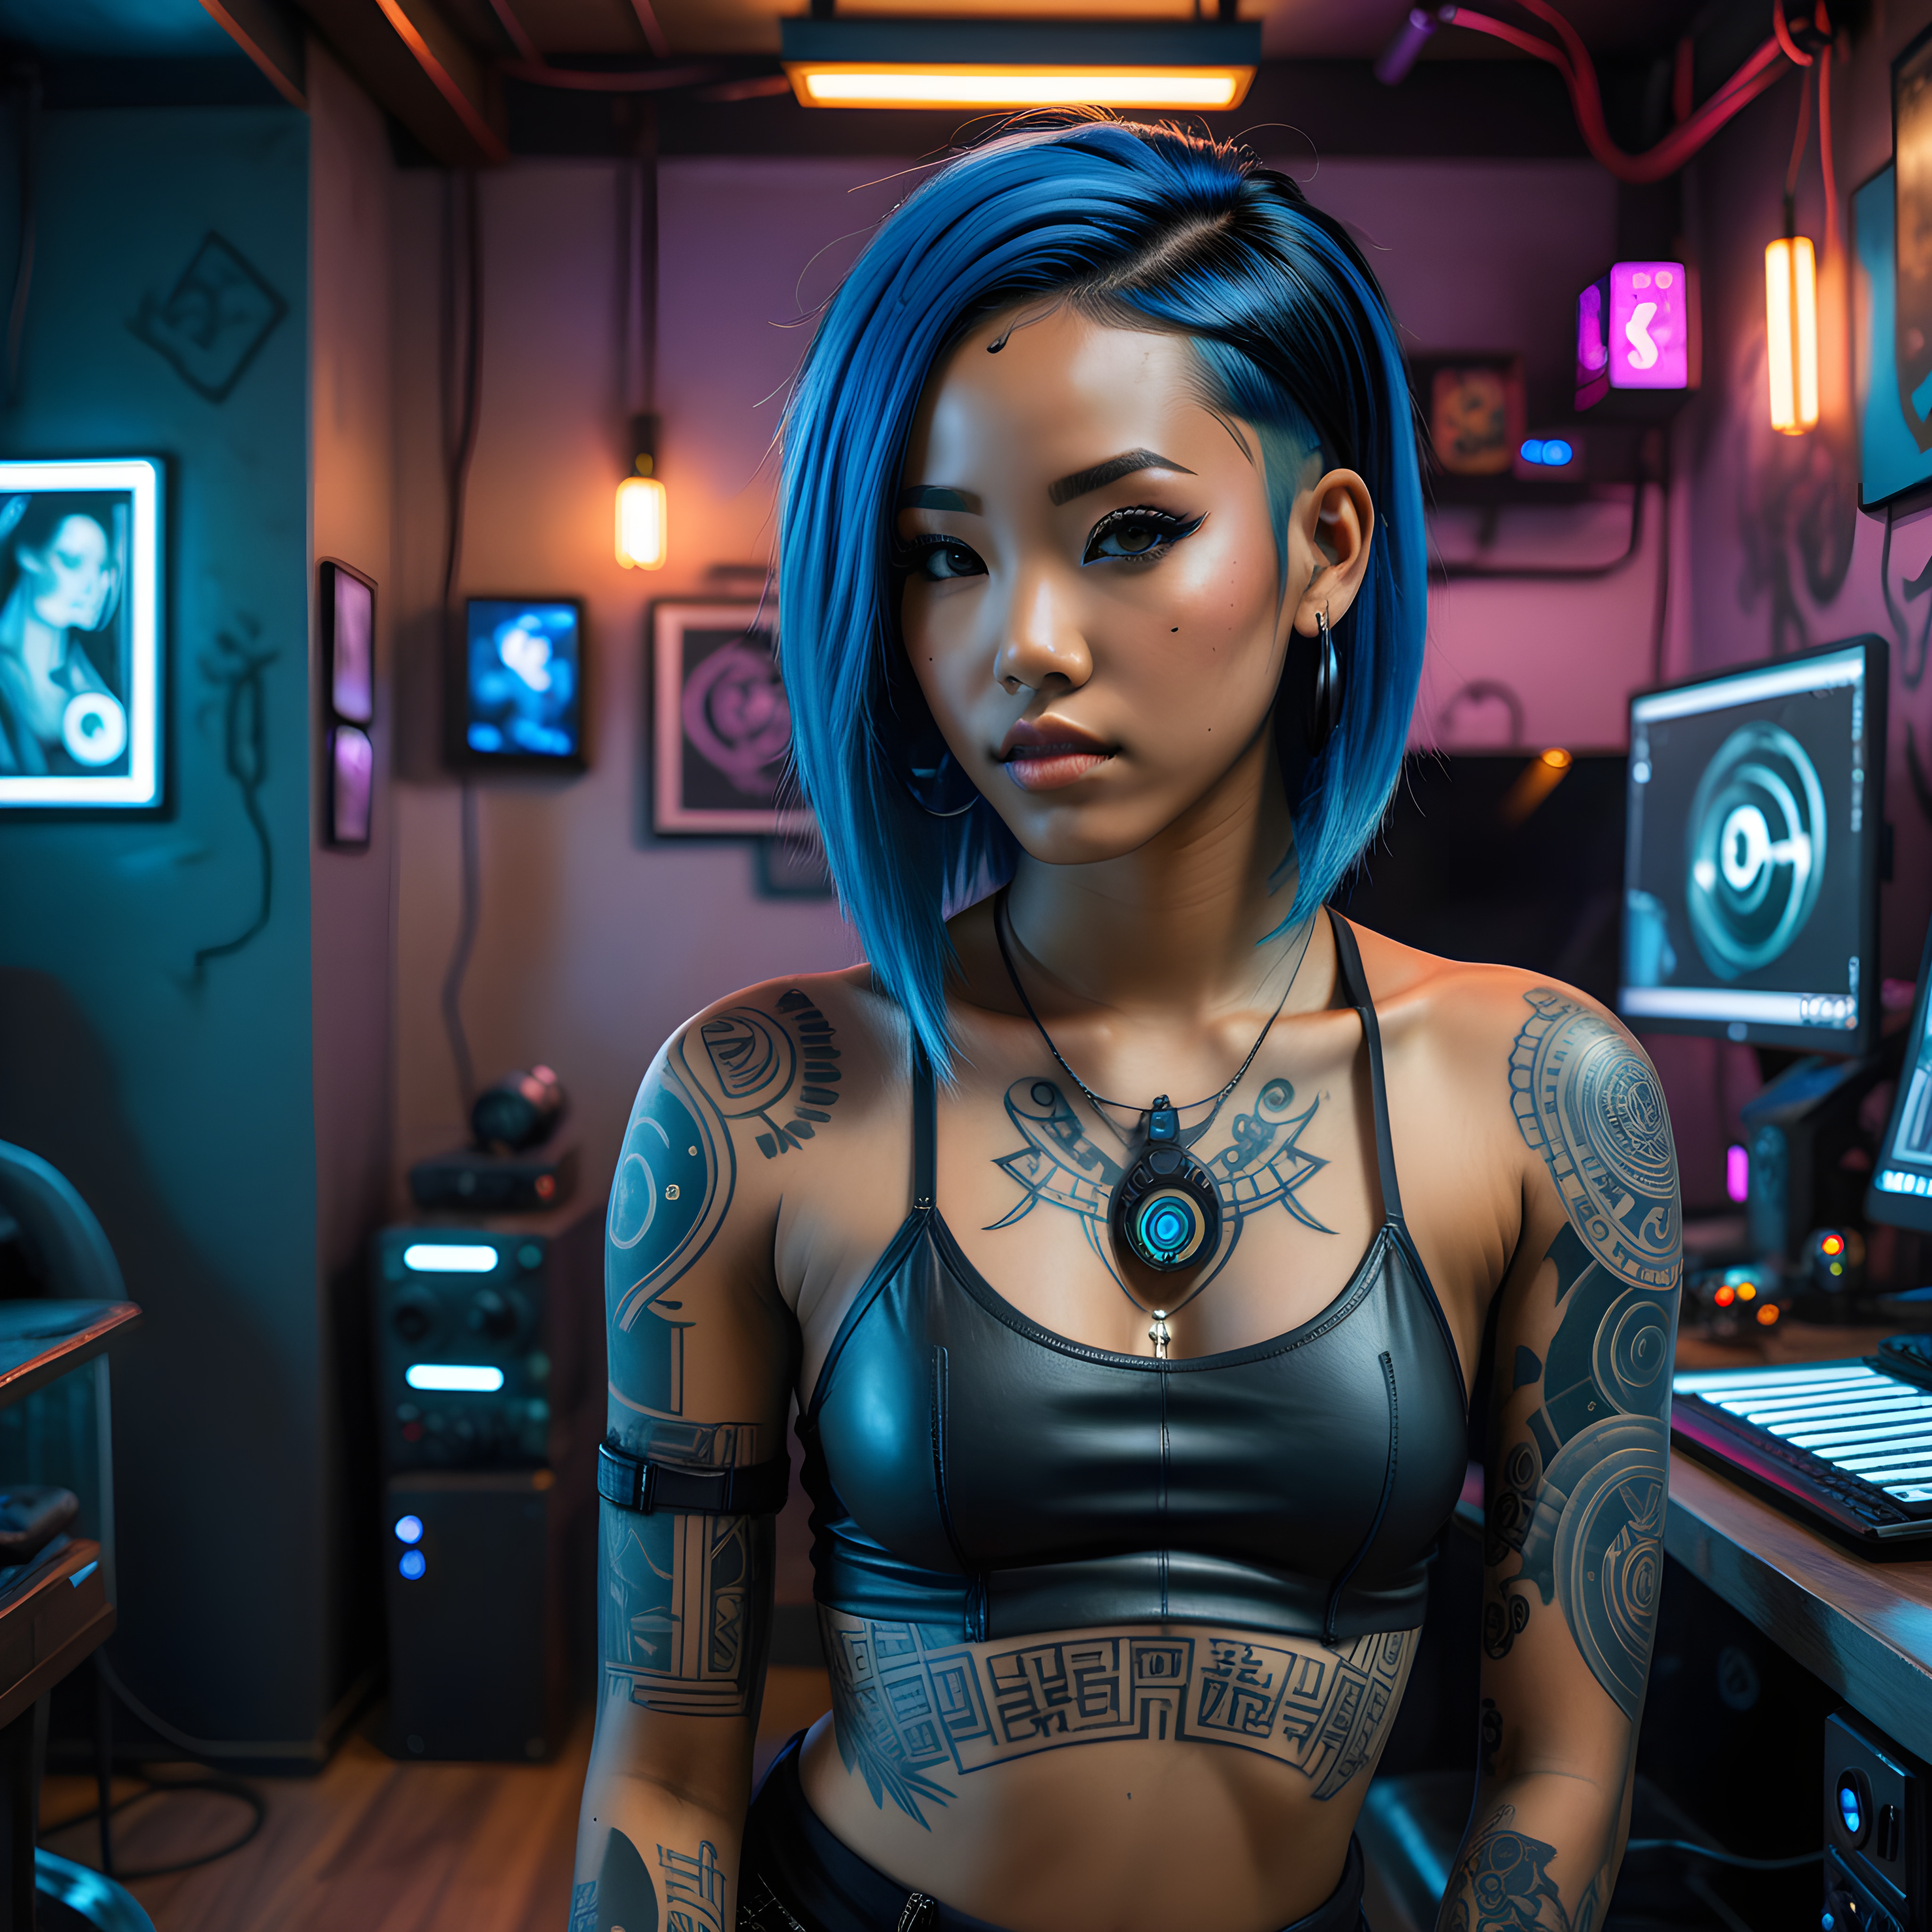 Blue-haired Asian girl